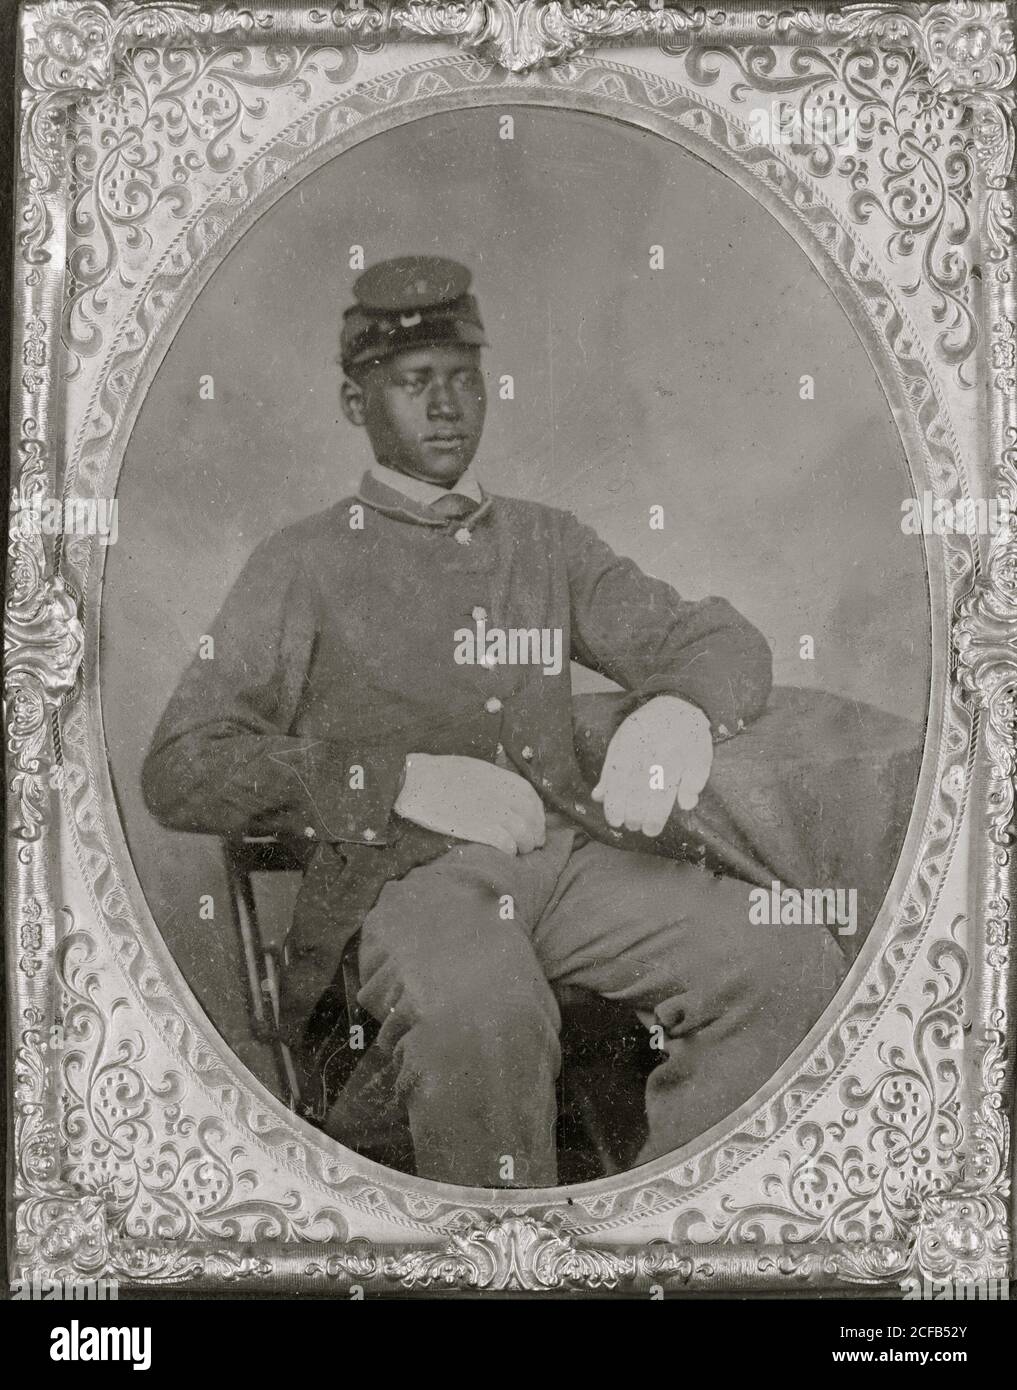 Soldat noir assis, redingote, gants, képi Banque D'Images